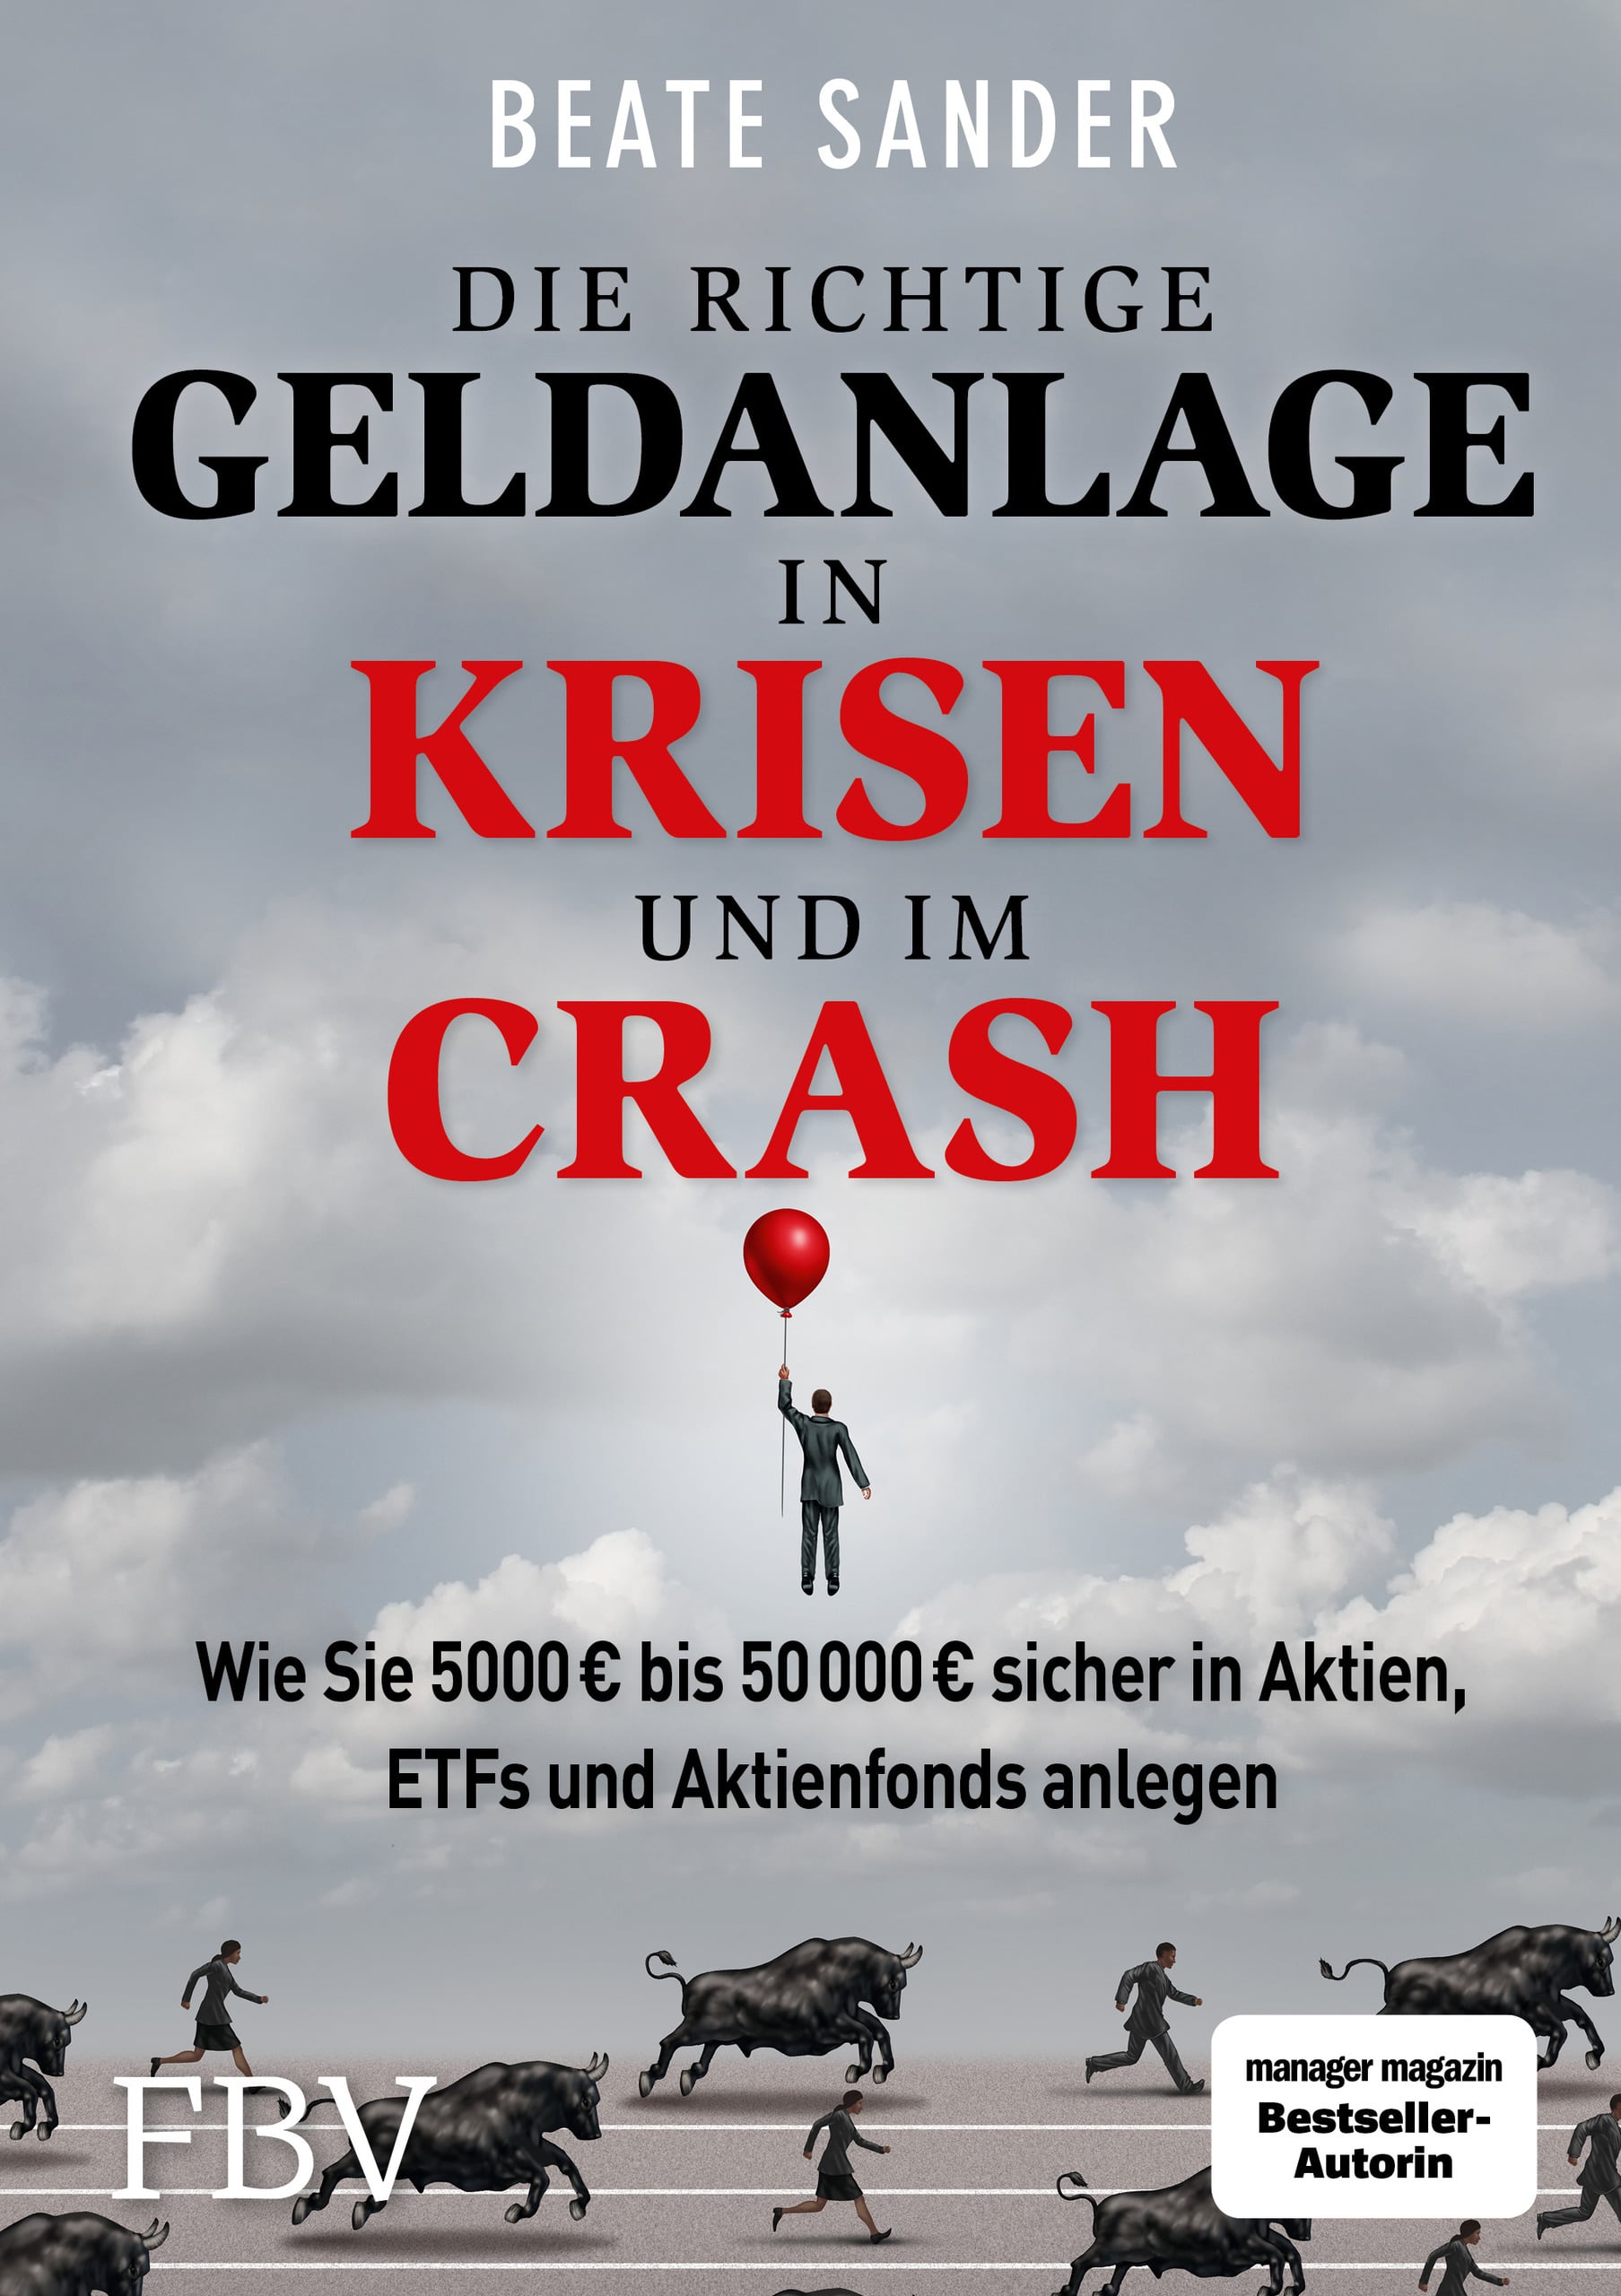 Die richtige Geldanlage in Krisen und im Crash_ Beate Sander